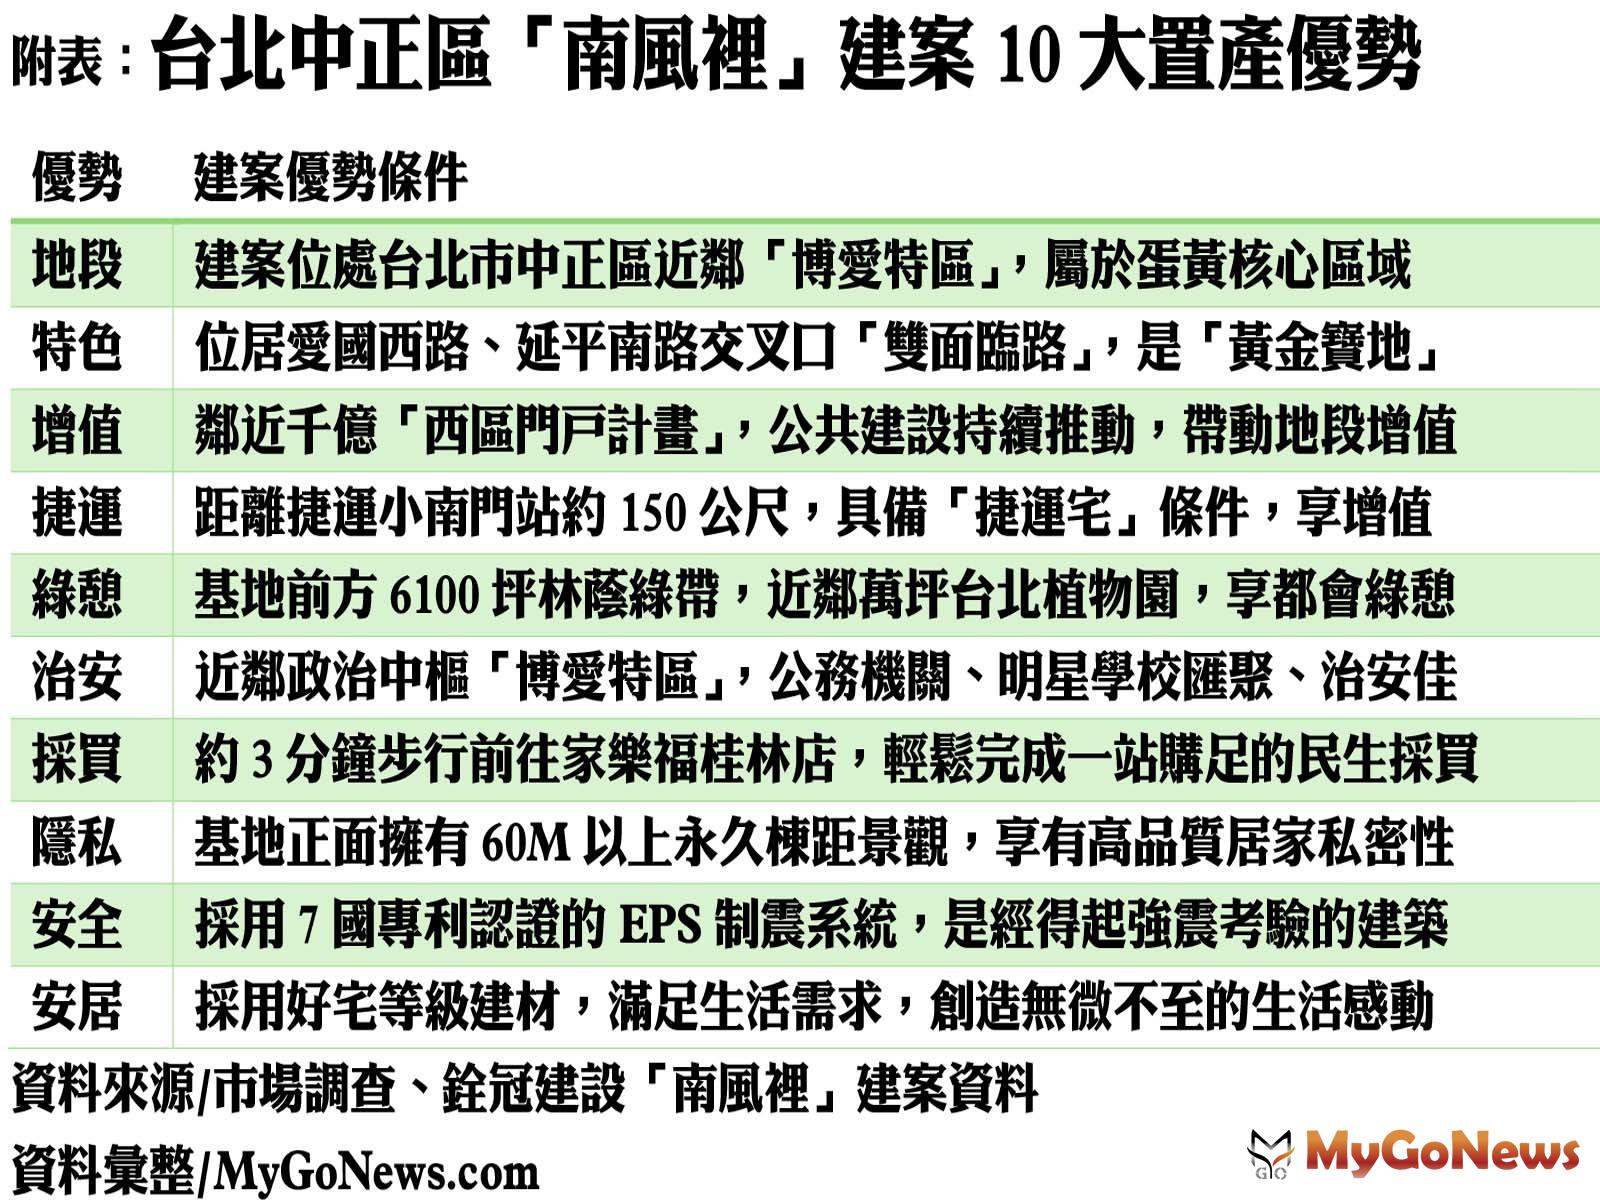 台北中正區「南風裡」建案10大置產優勢 MyGoNews房地產新聞 專題報導